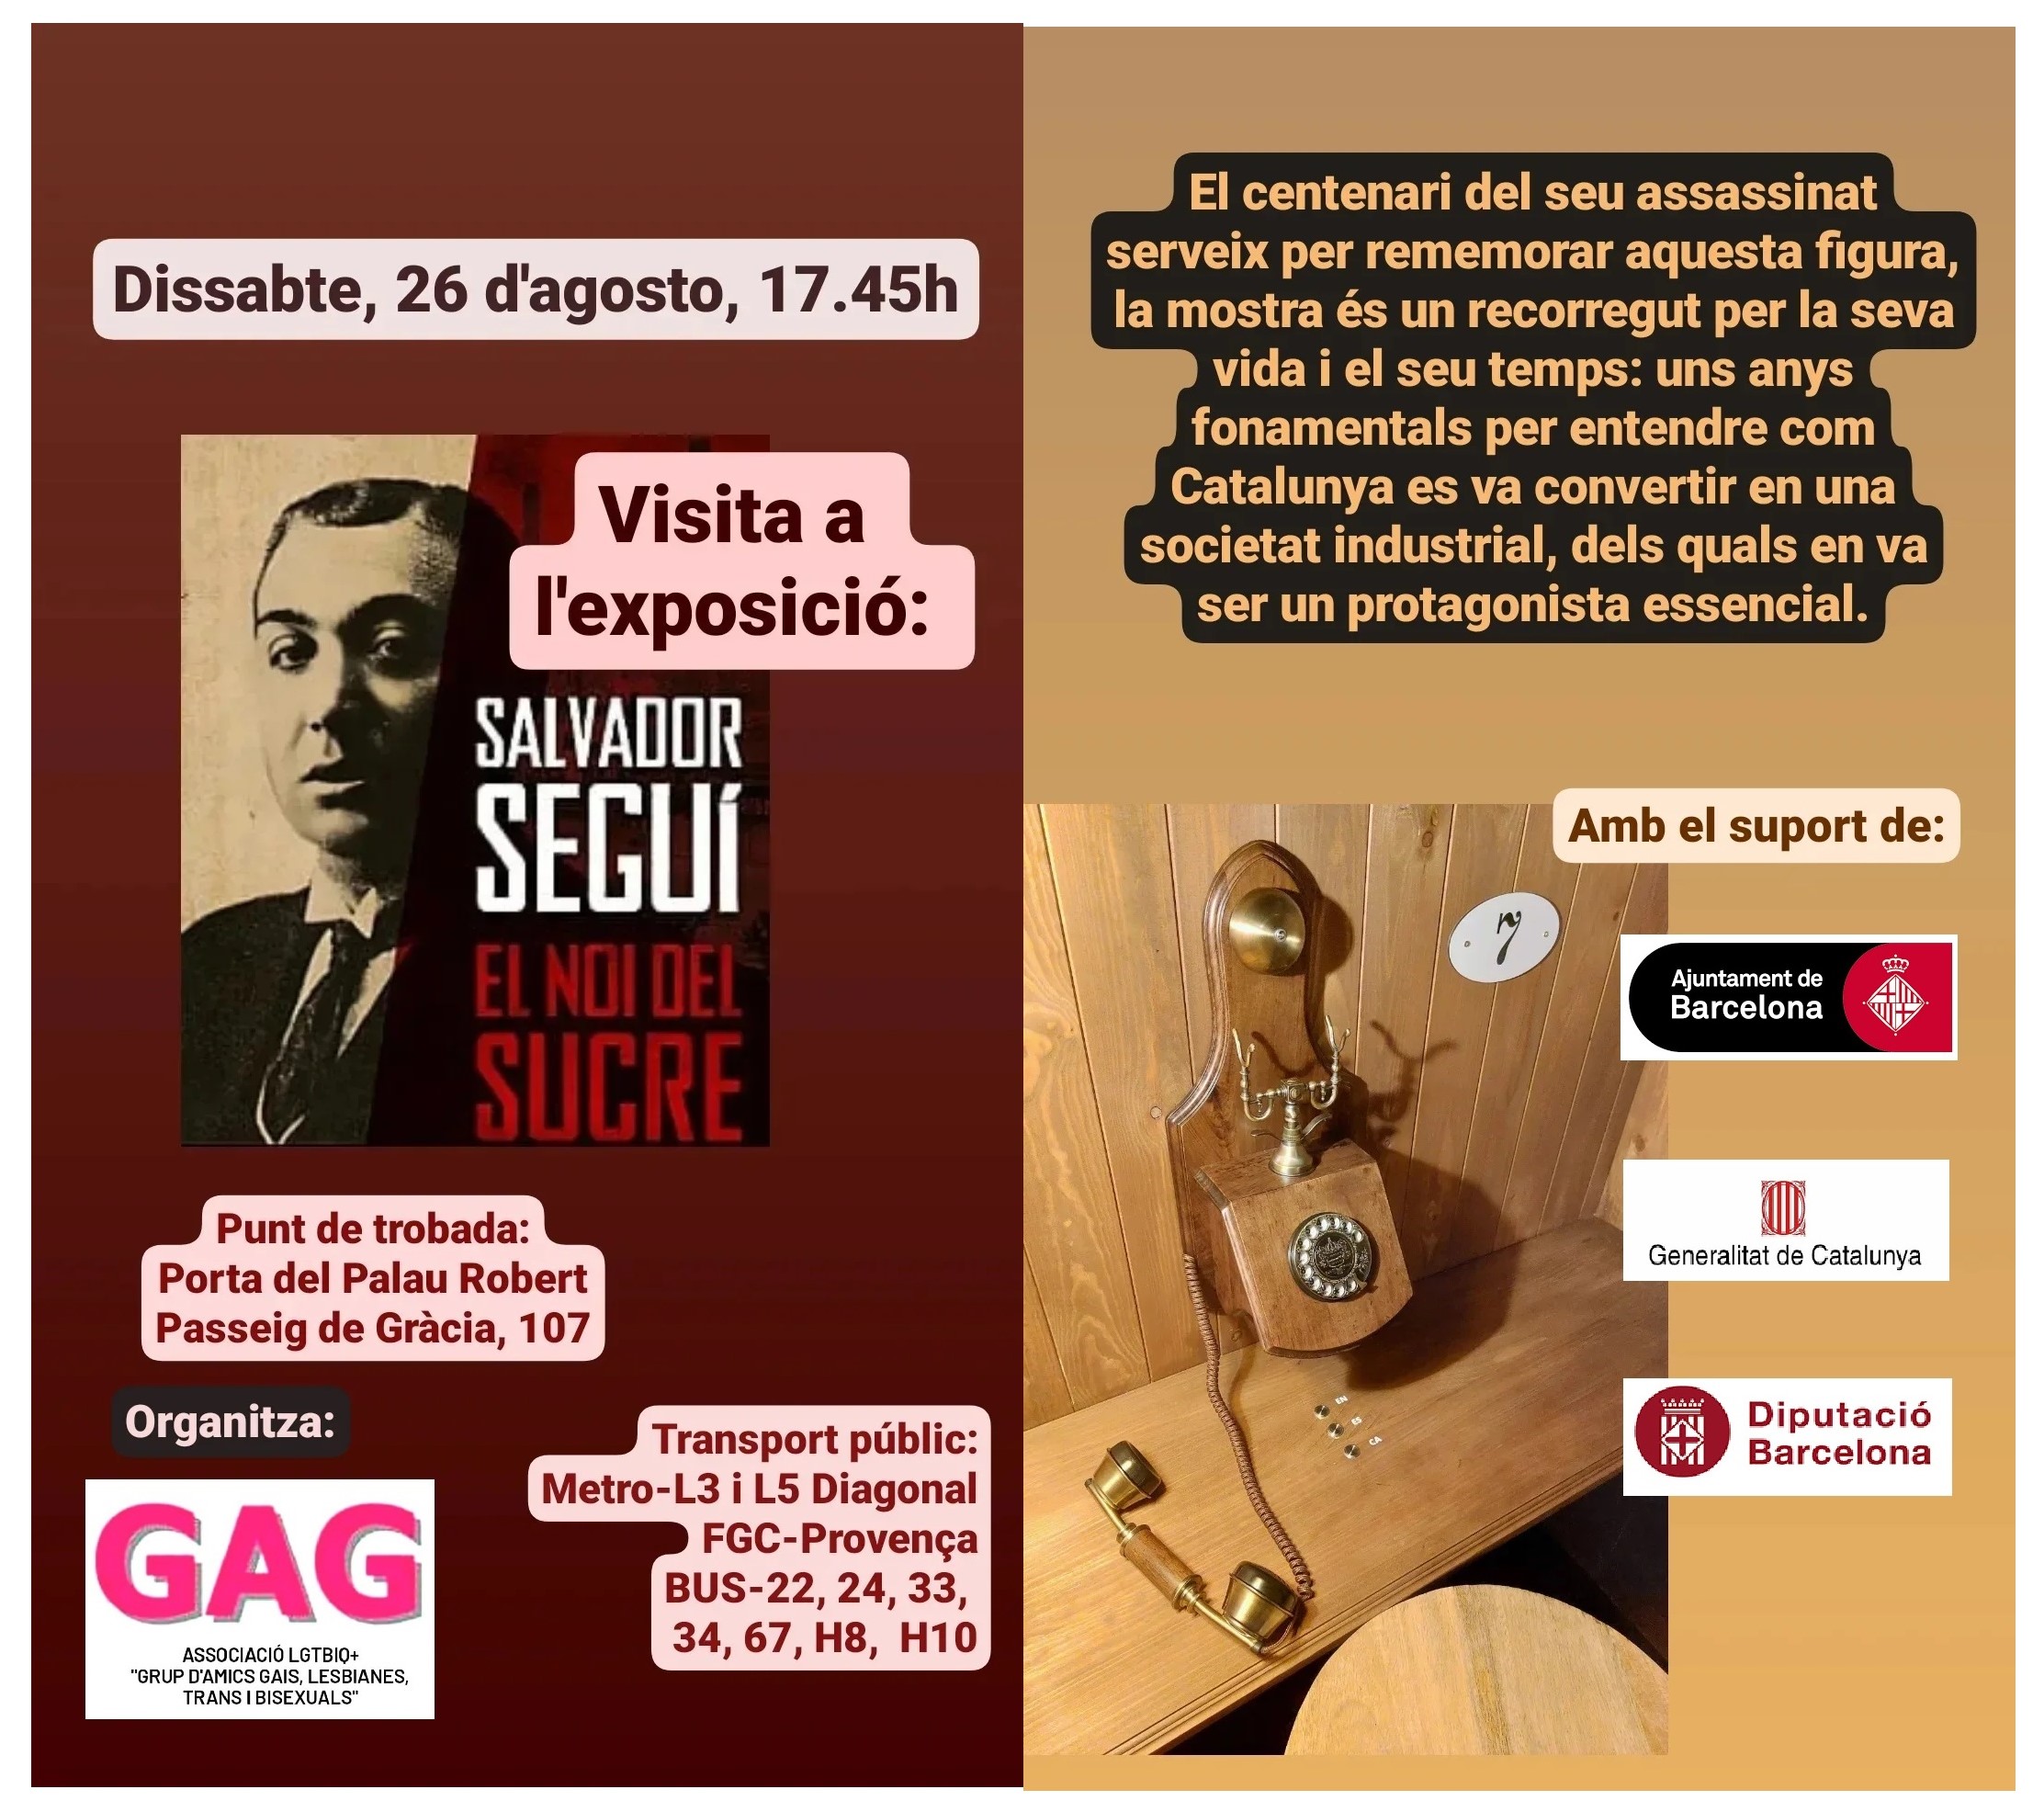 Dissabte, 26 d’agost a les 17.45h: Visita a l’Exposició “Salvador Segui”